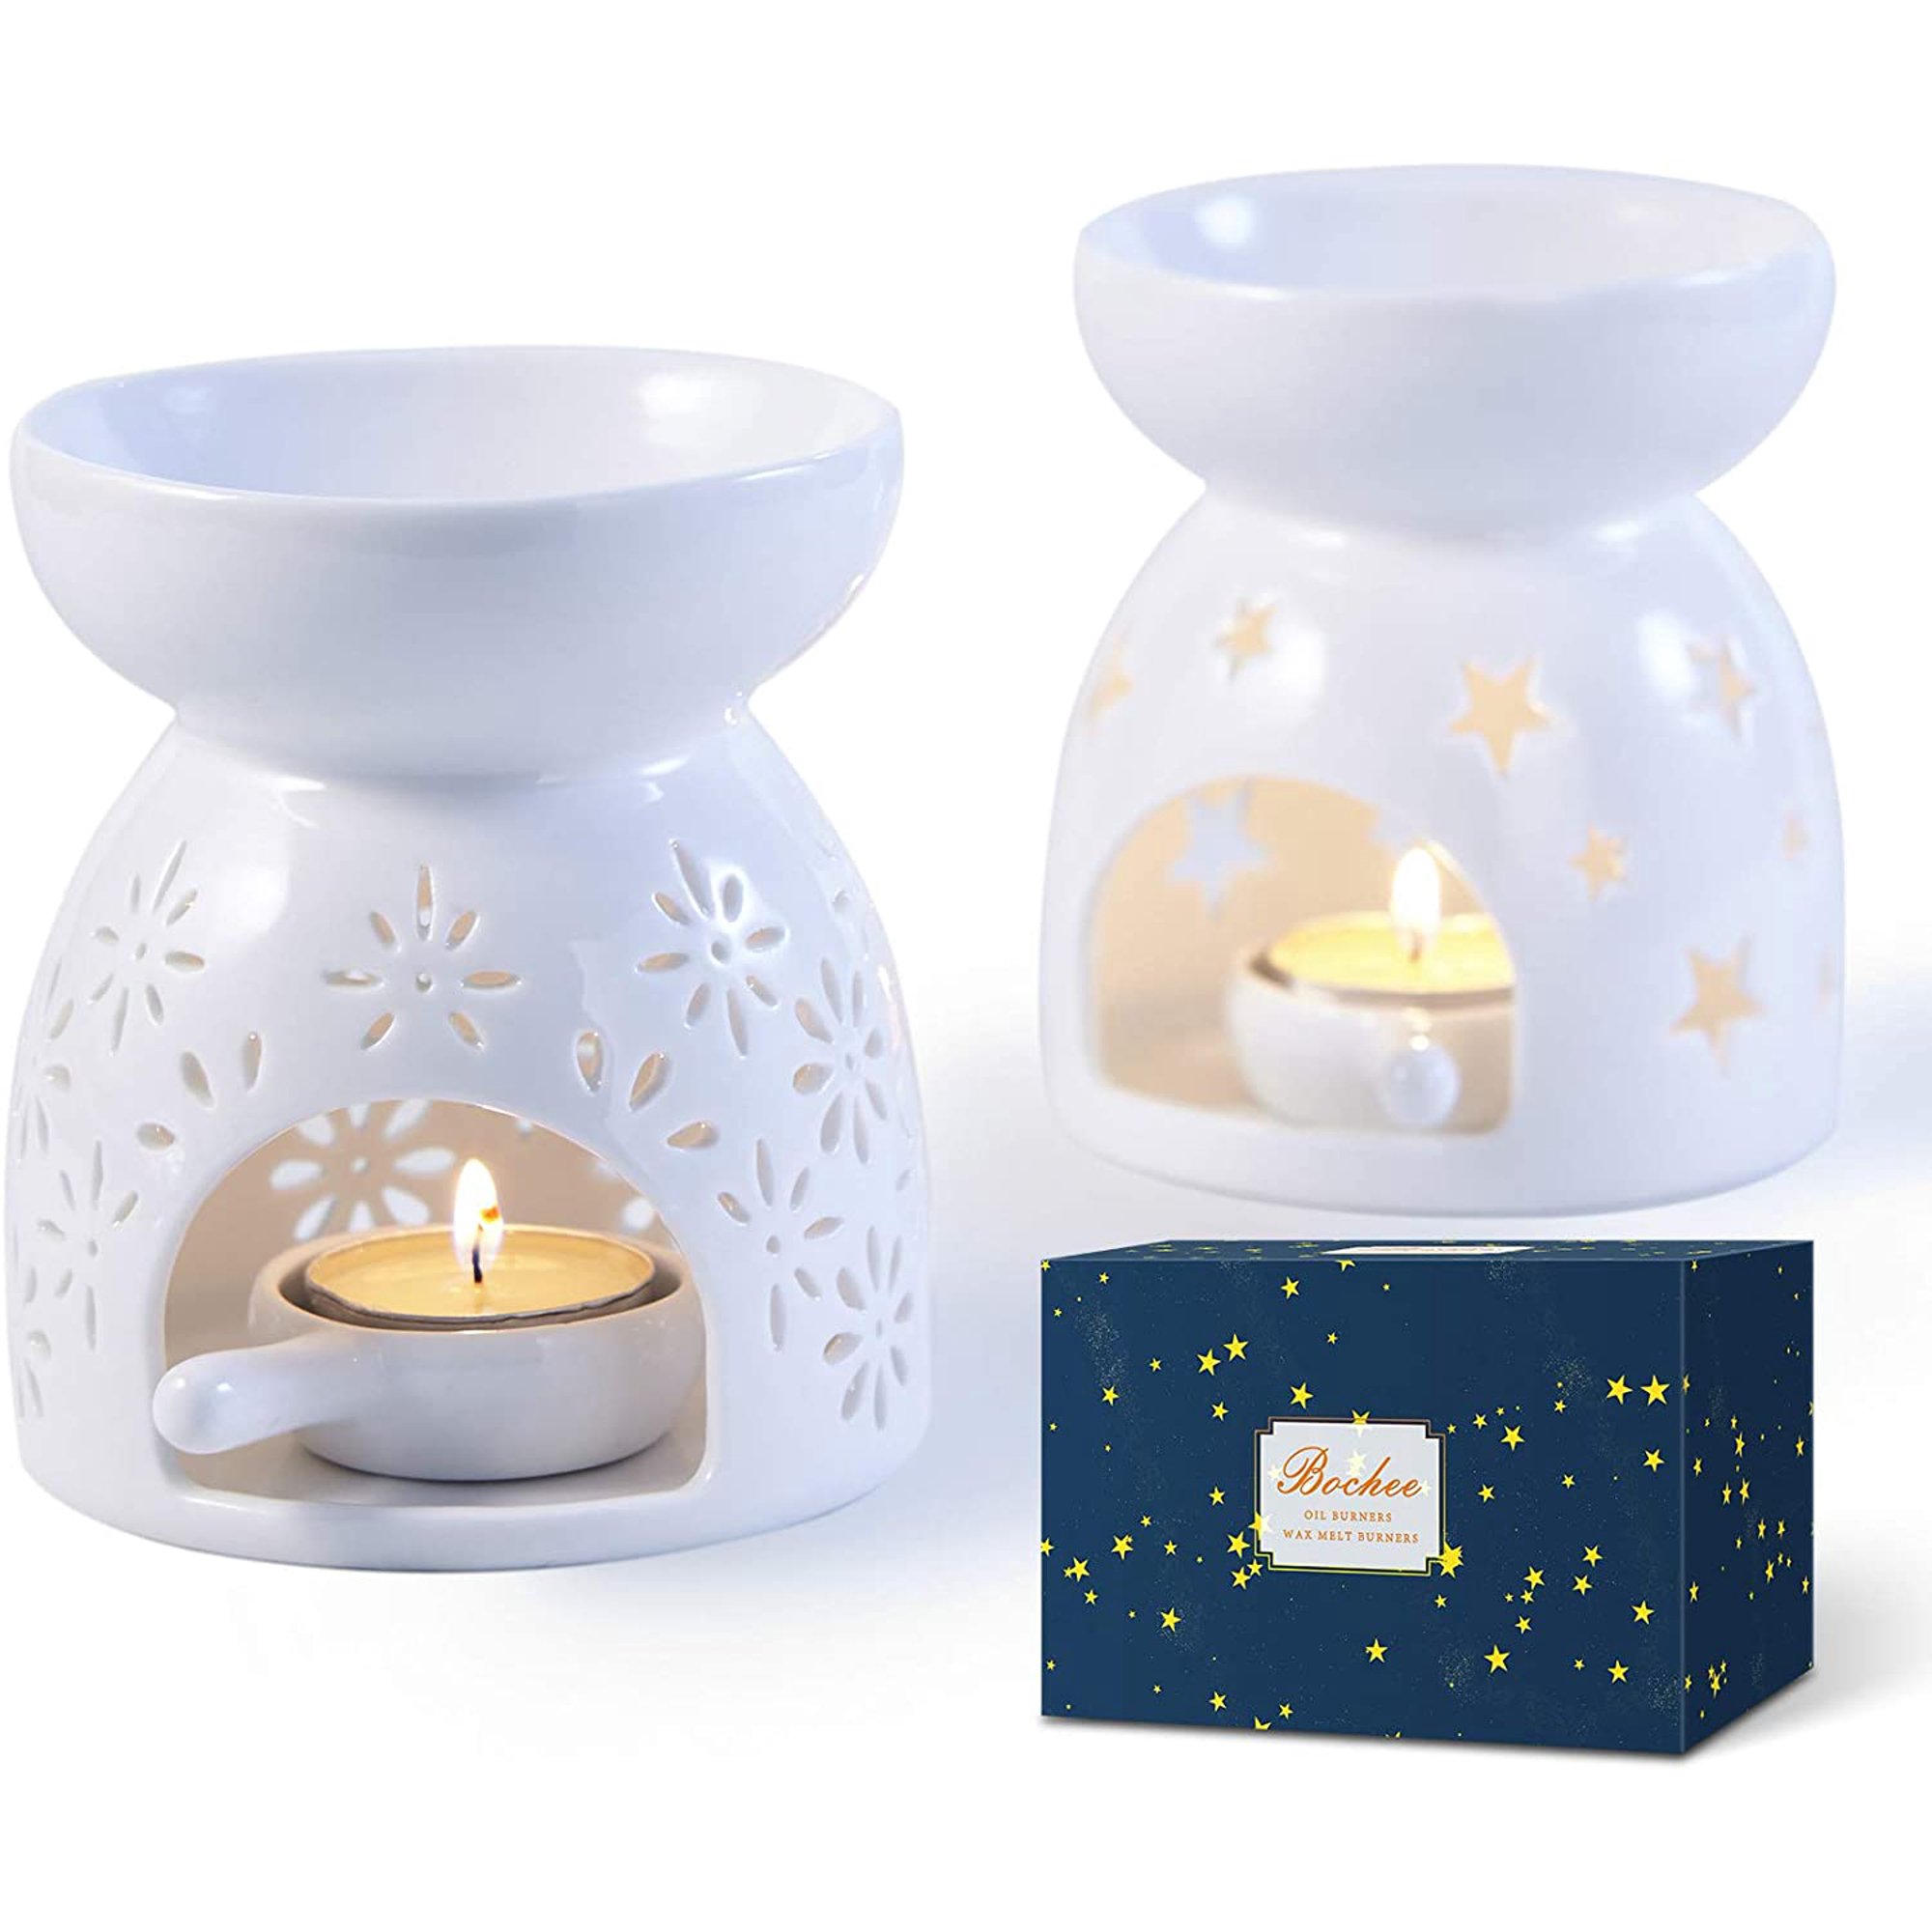 ceramic box candle holder designs